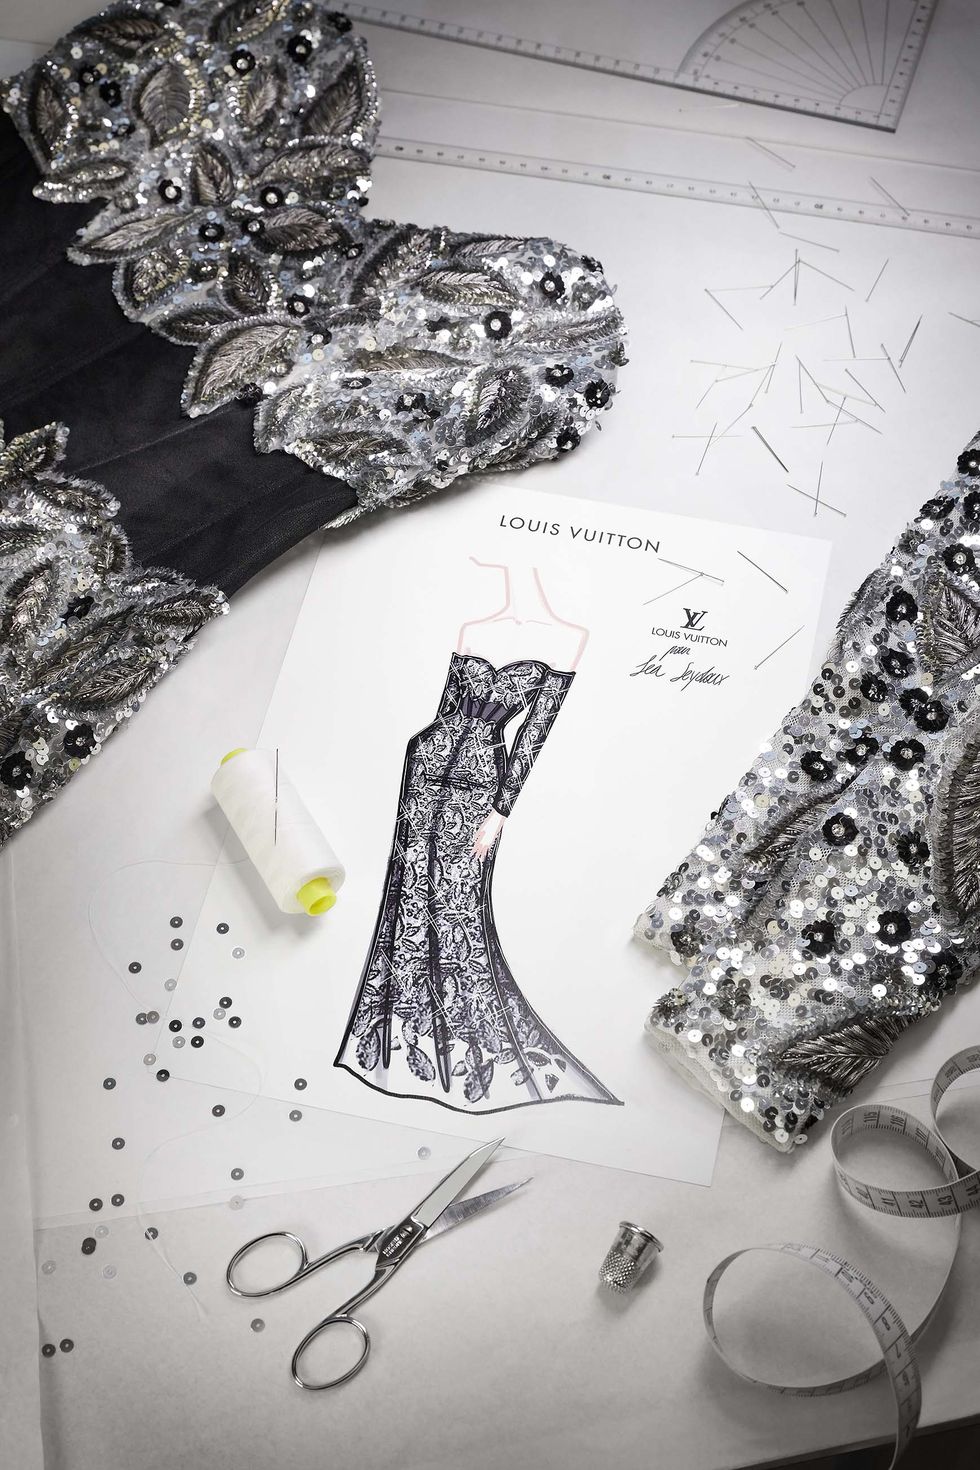 BAFTA 2022 Film Awards: Léa Seydoux wears glitzy black and silver